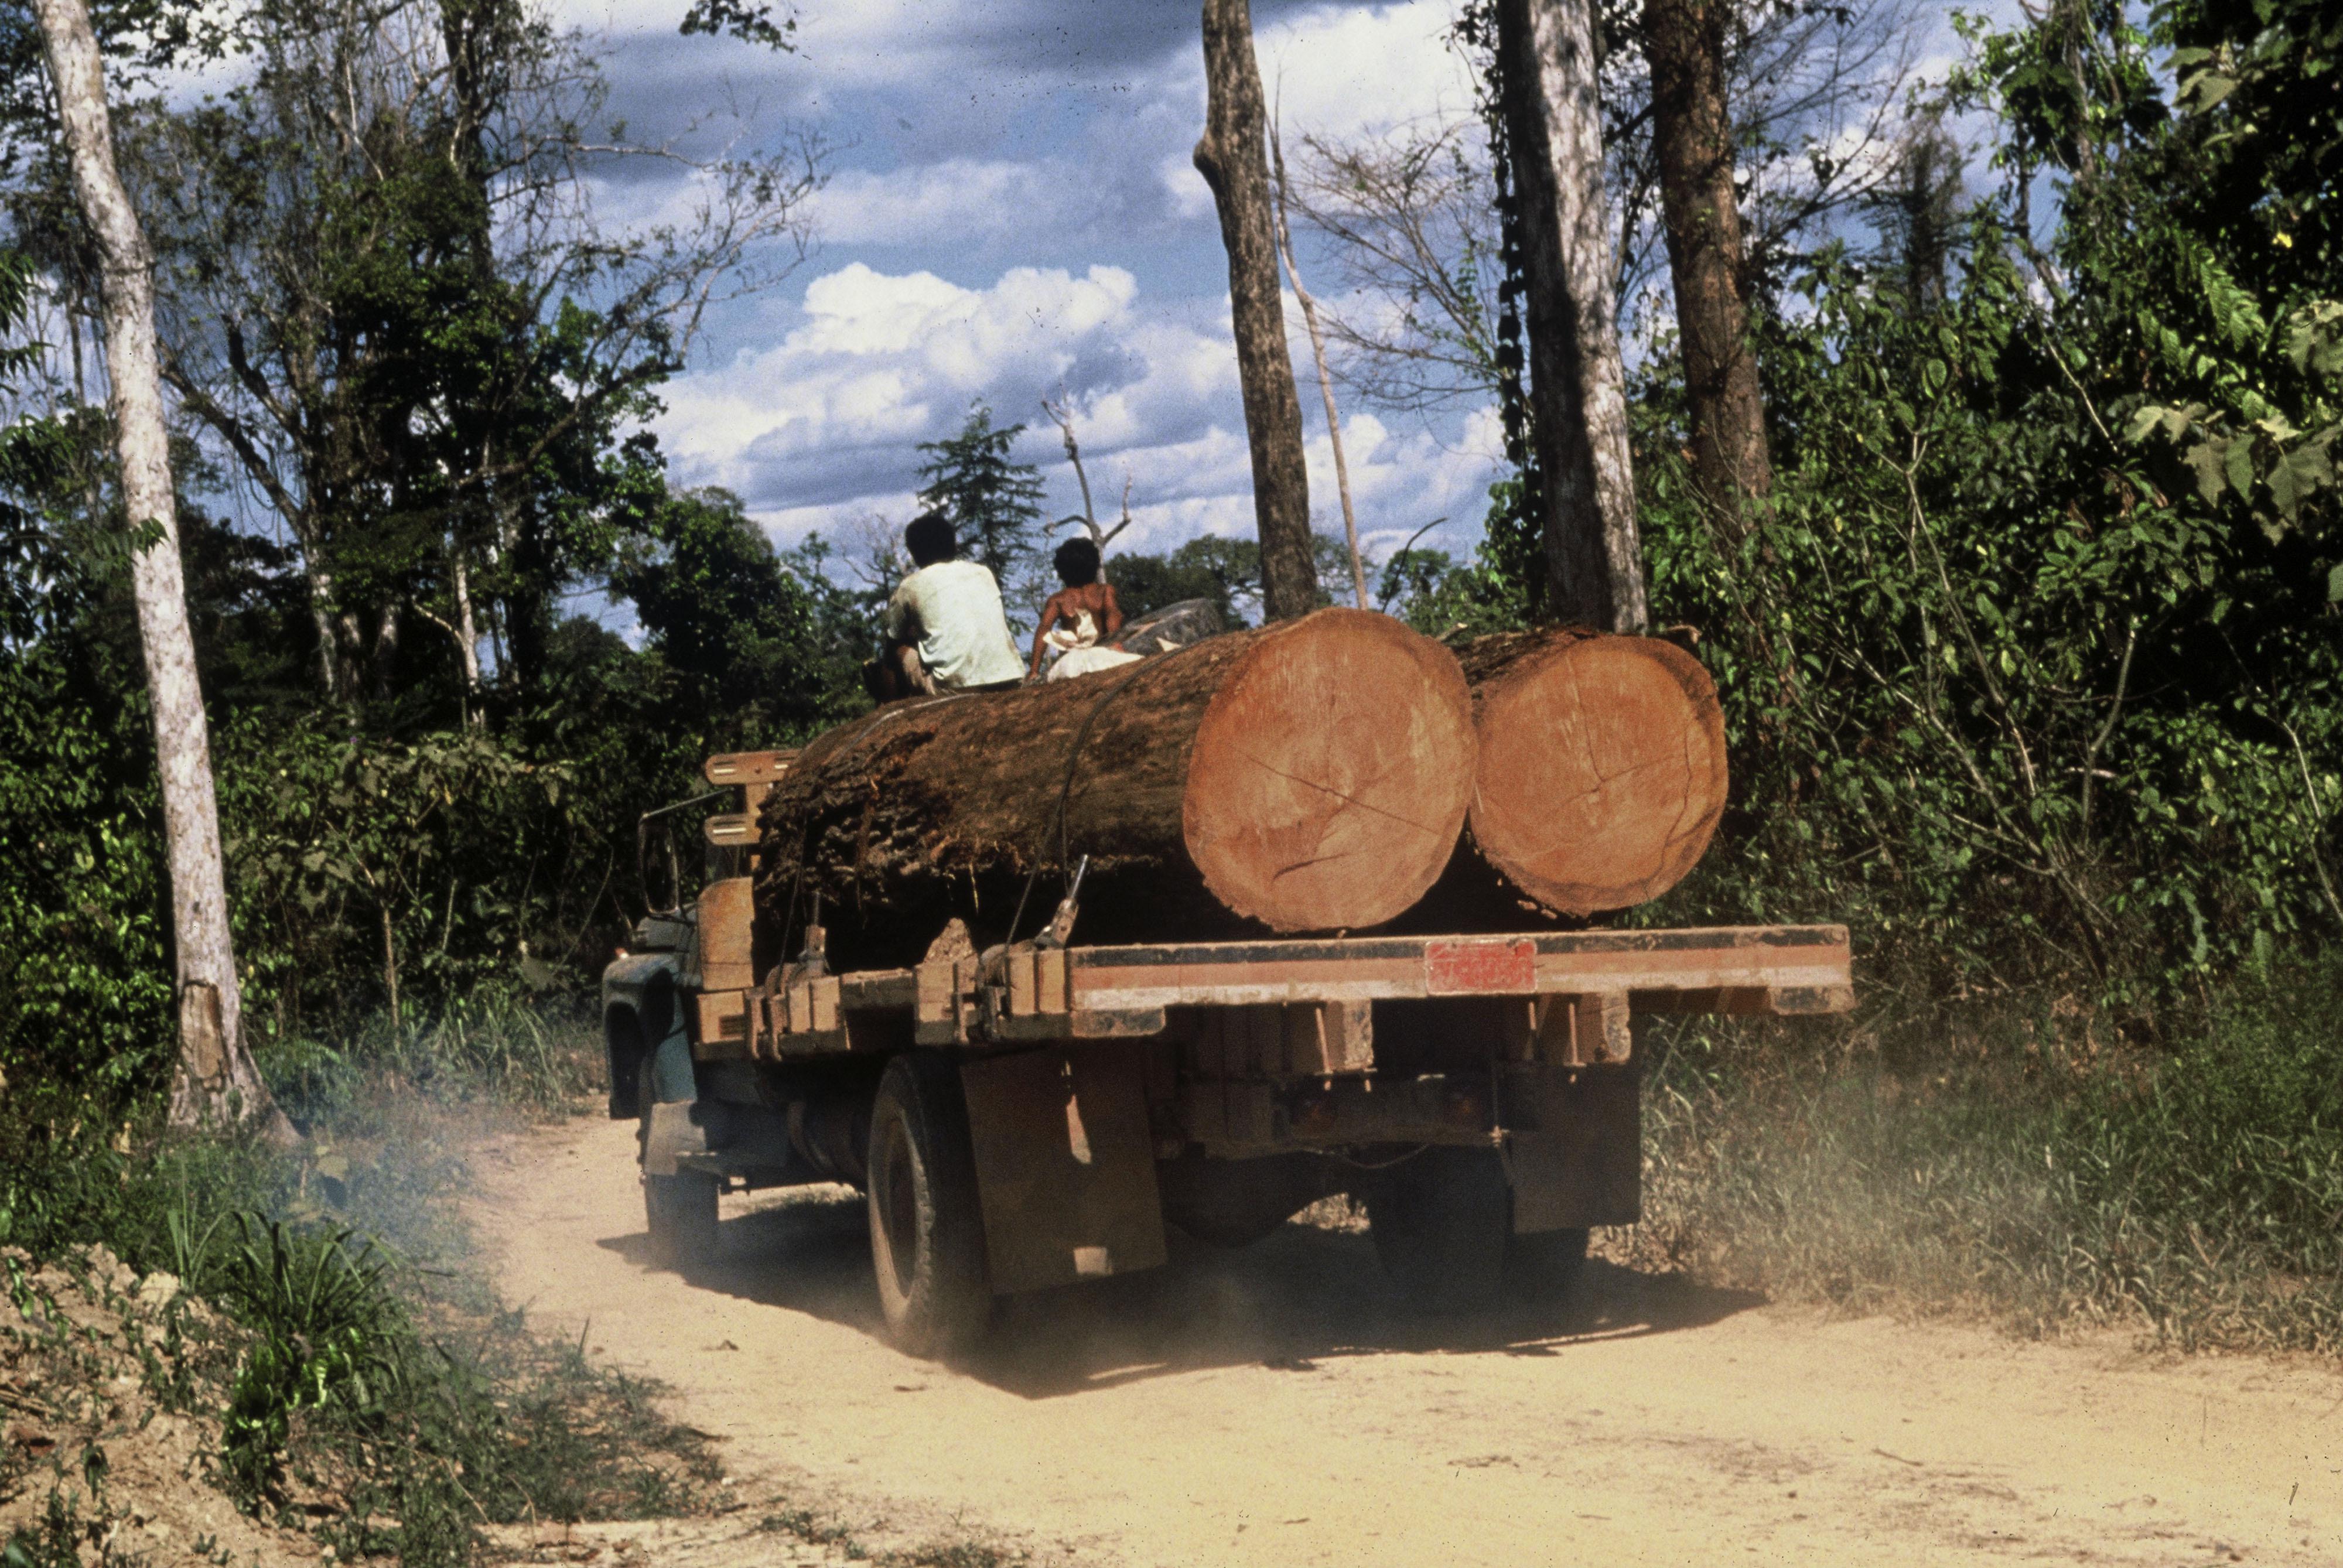 Taglio del mogano, trasportato in segheria, nell'Amazzonia brasiliana.